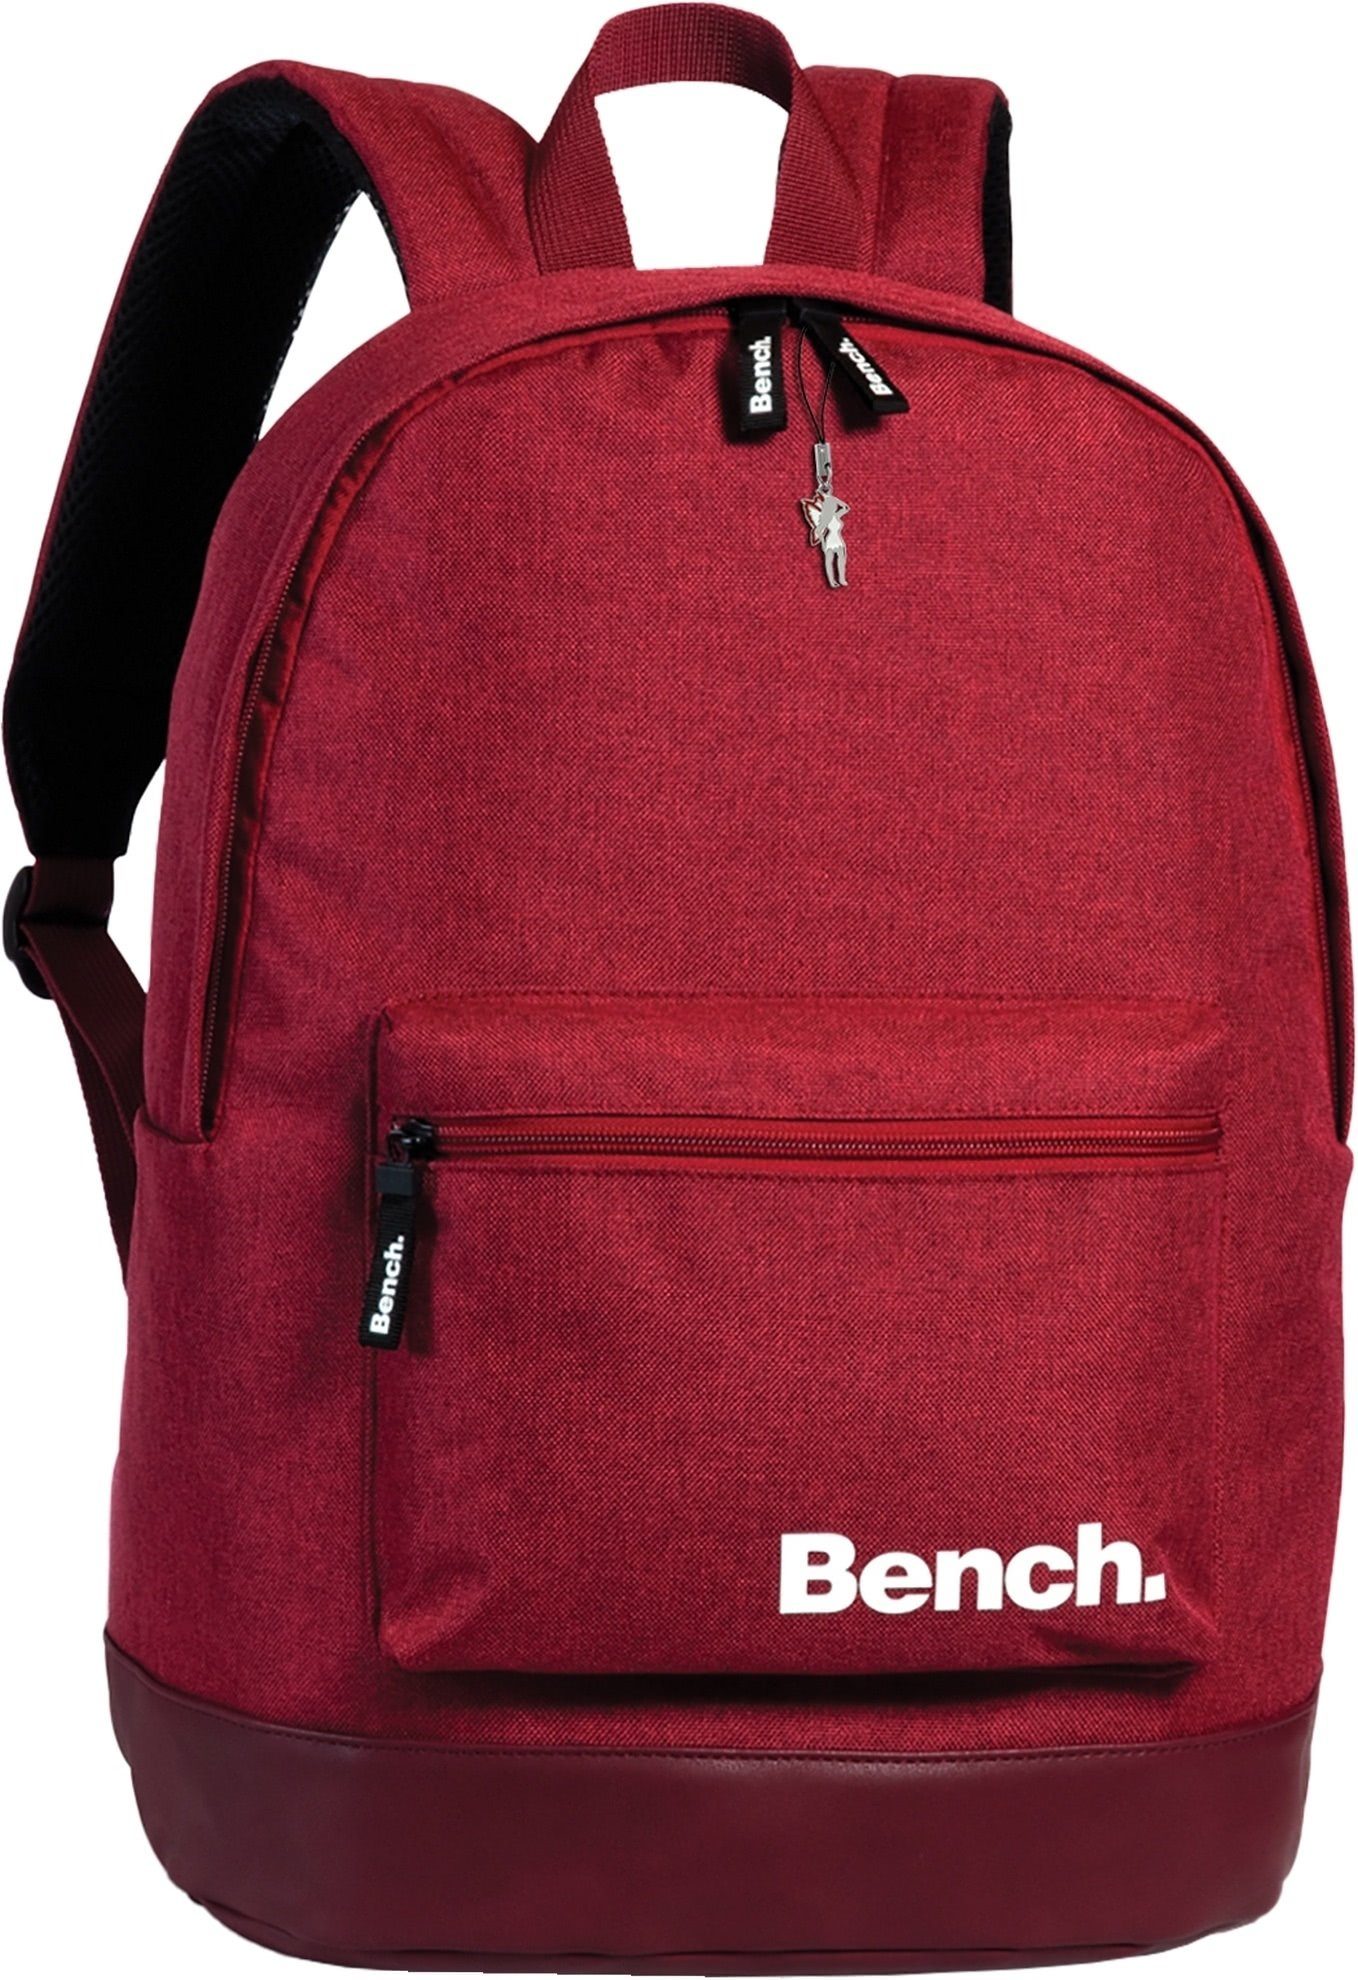 Bench. Sporttasche Bench Schulrucksack rot Größe 31x42x20 (Freizeitrucksack), Freizeitrucksack, Sporttasche Polyester, rot ca. 42cm hoch marine